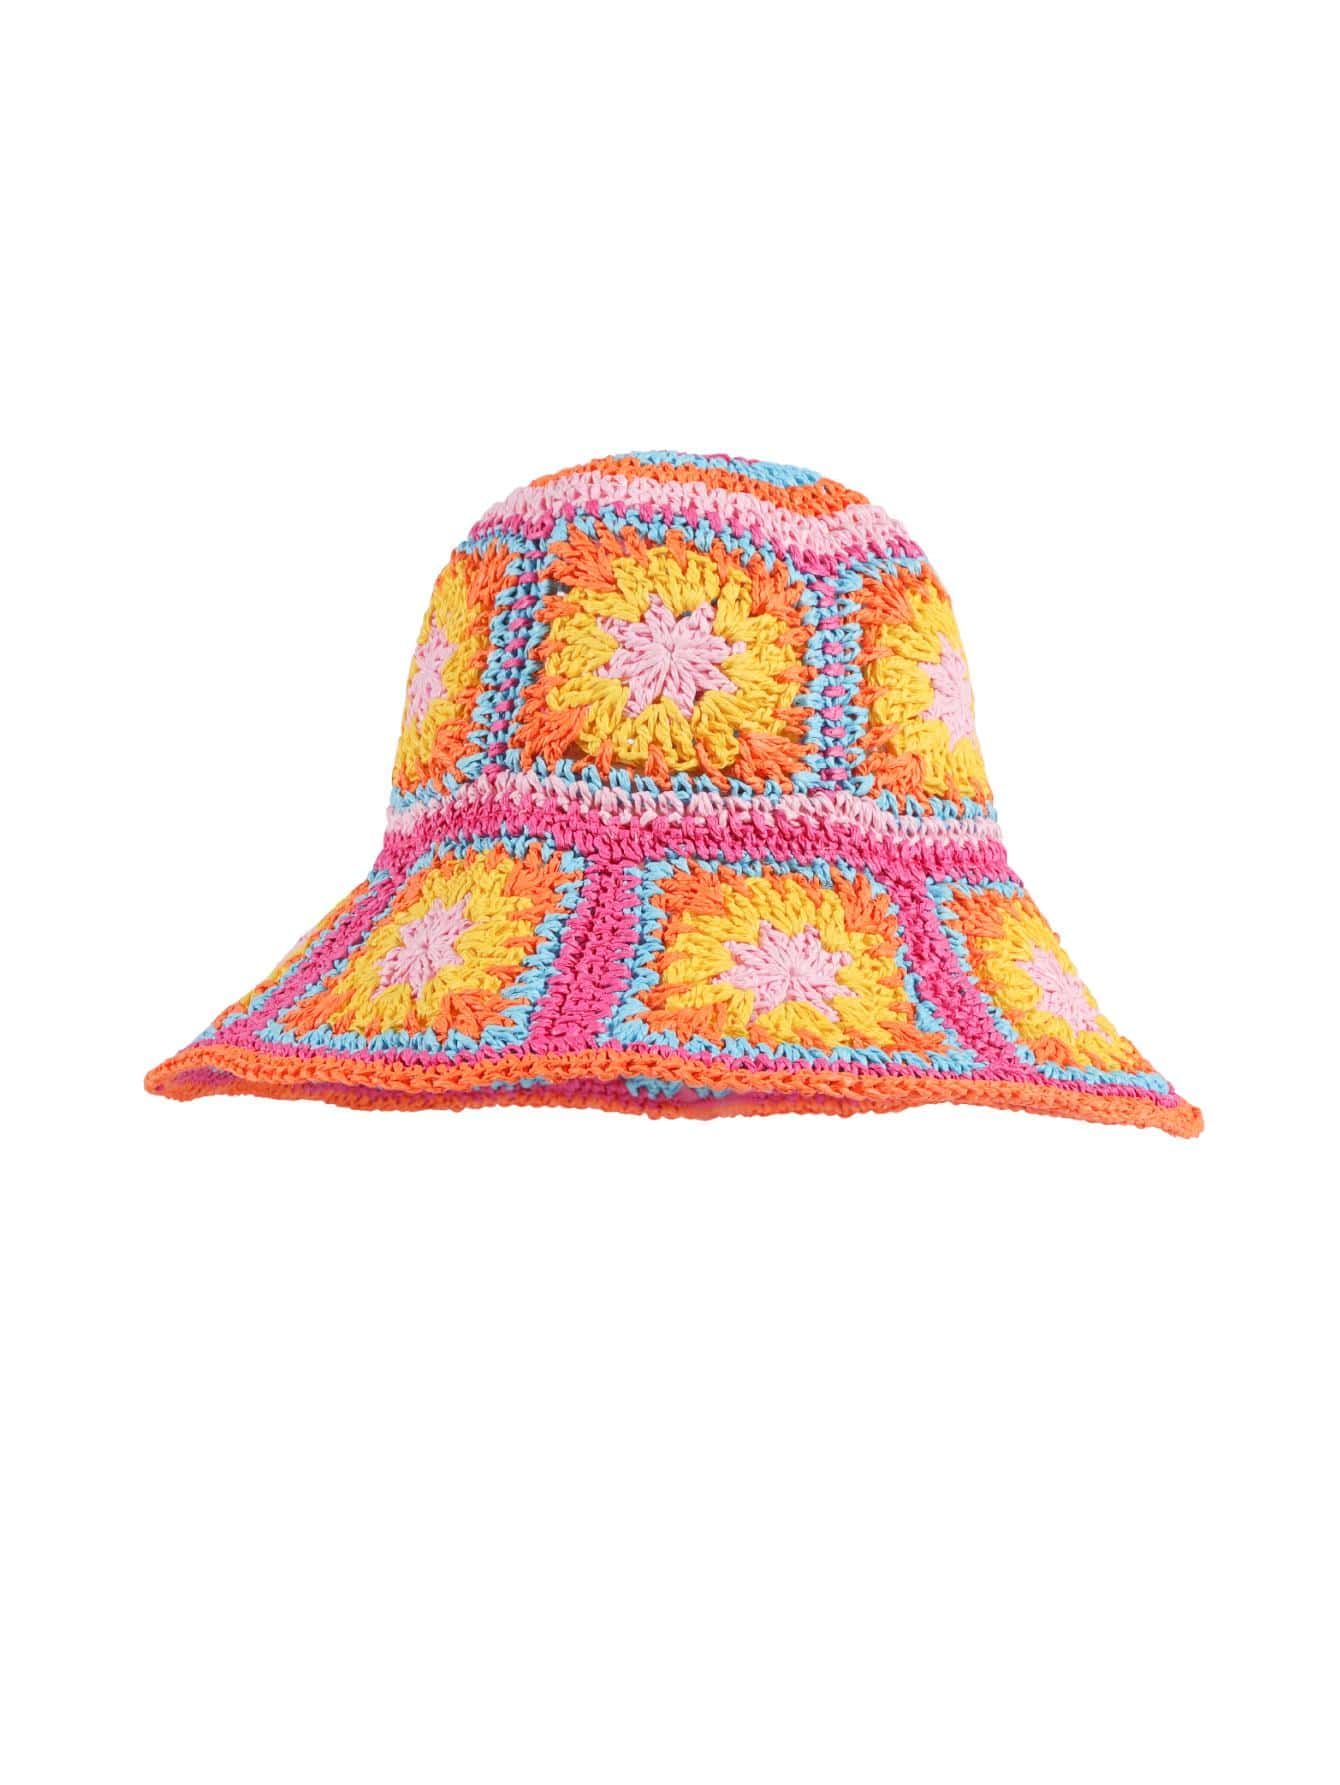 $13.70        
    $13.02
     
    SHEIN CLUB
              
      Floral Pattern Bucket Hat
   ... | SHEIN